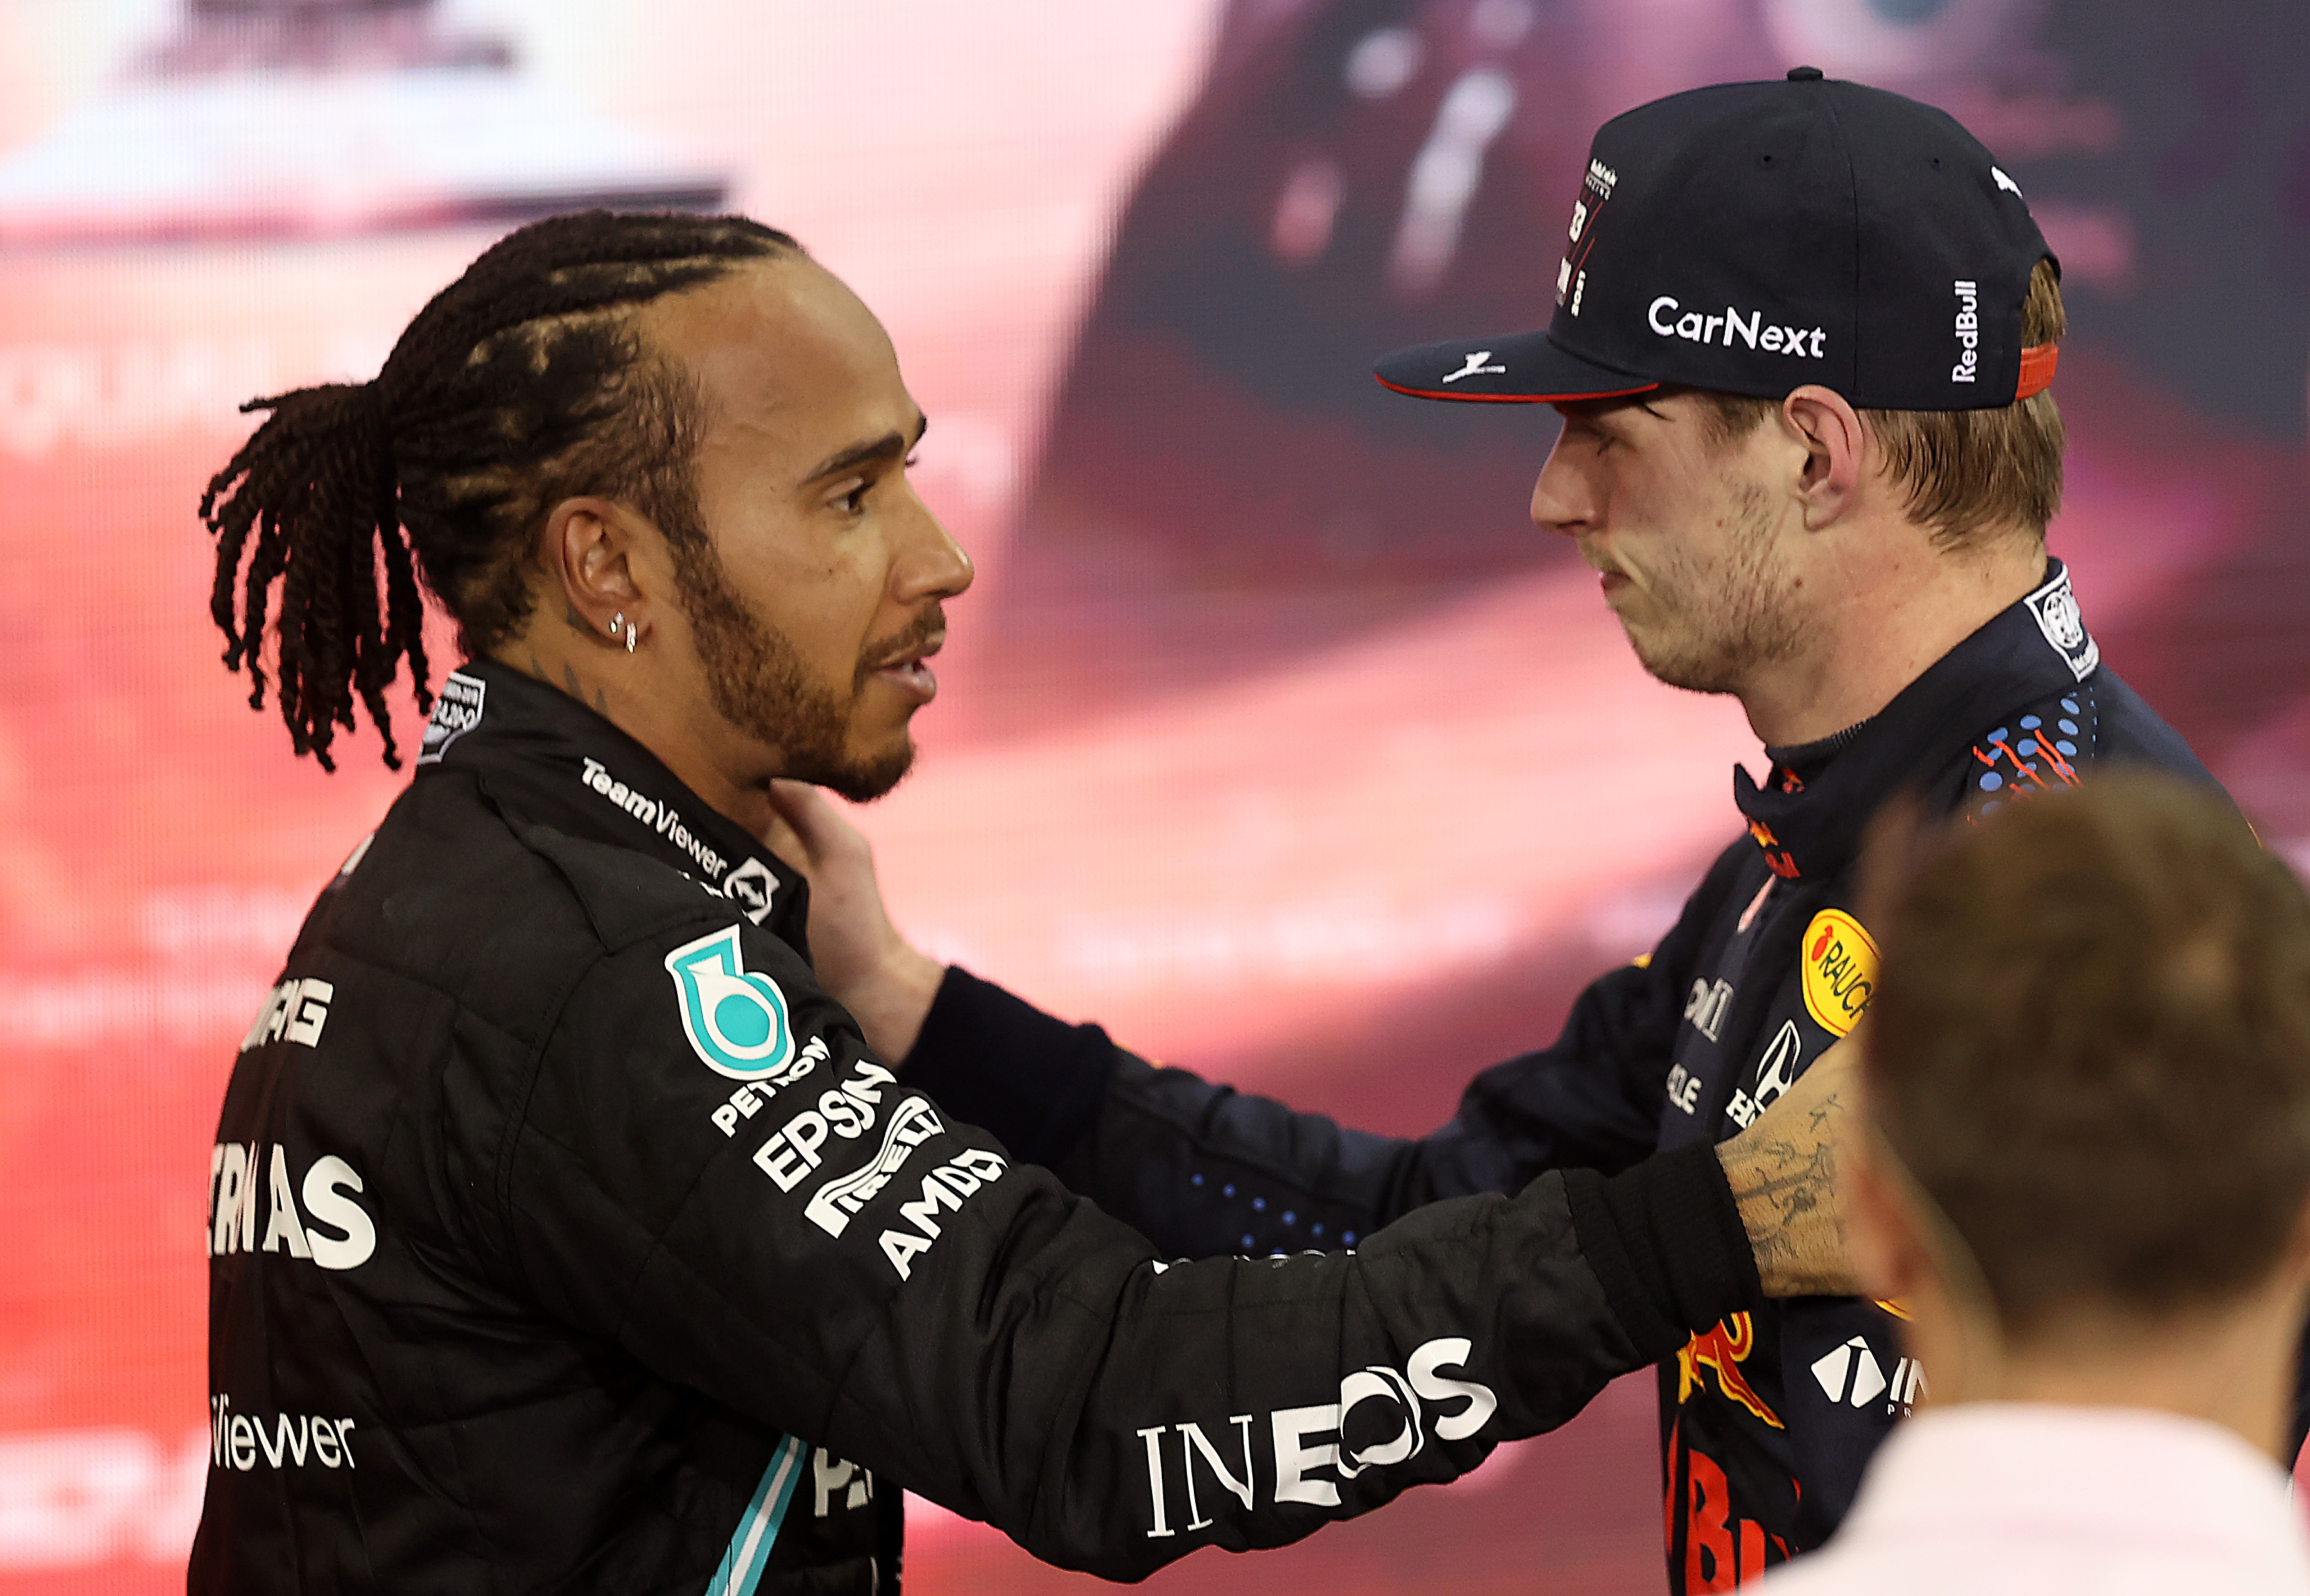 Replica lui Max Verstappen pentru Lewis Hamilton. Războiul dintre cei doi campioni continuă